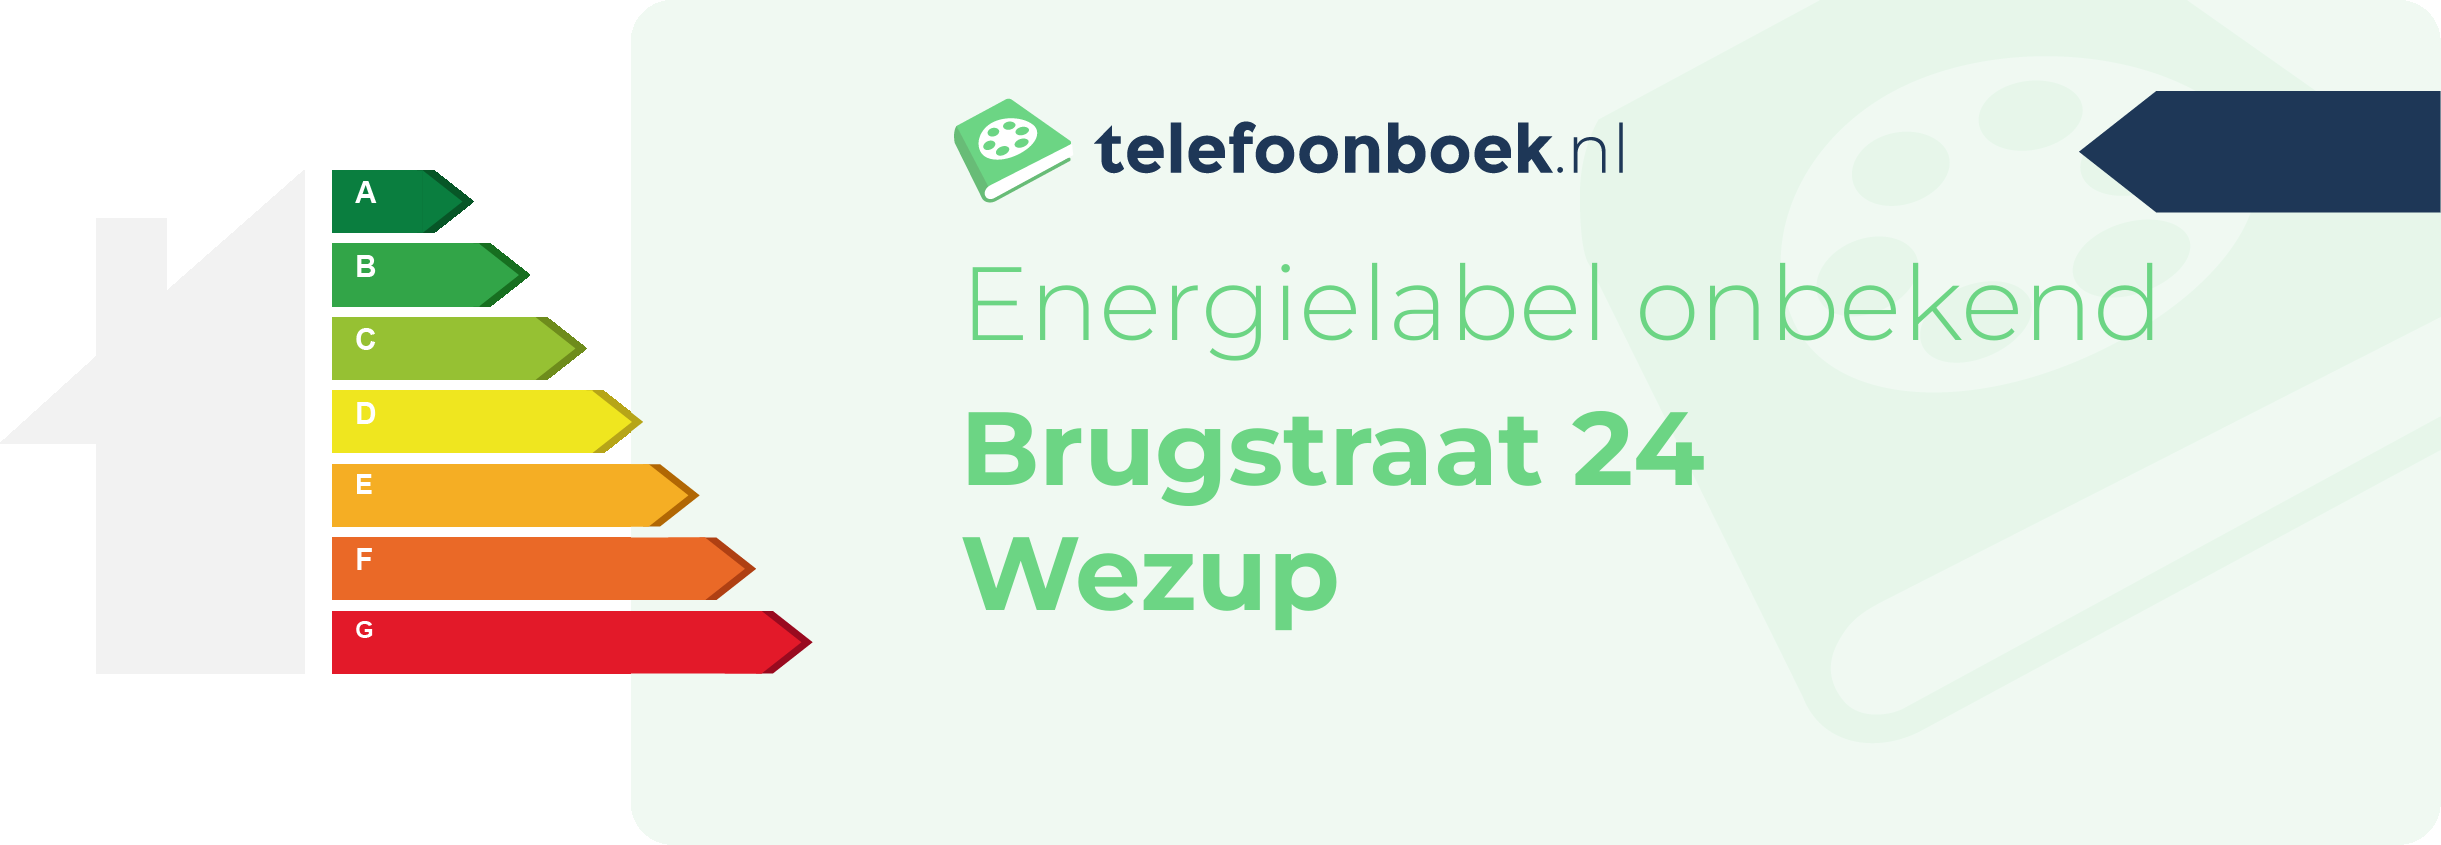 Energielabel Brugstraat 24 Wezup